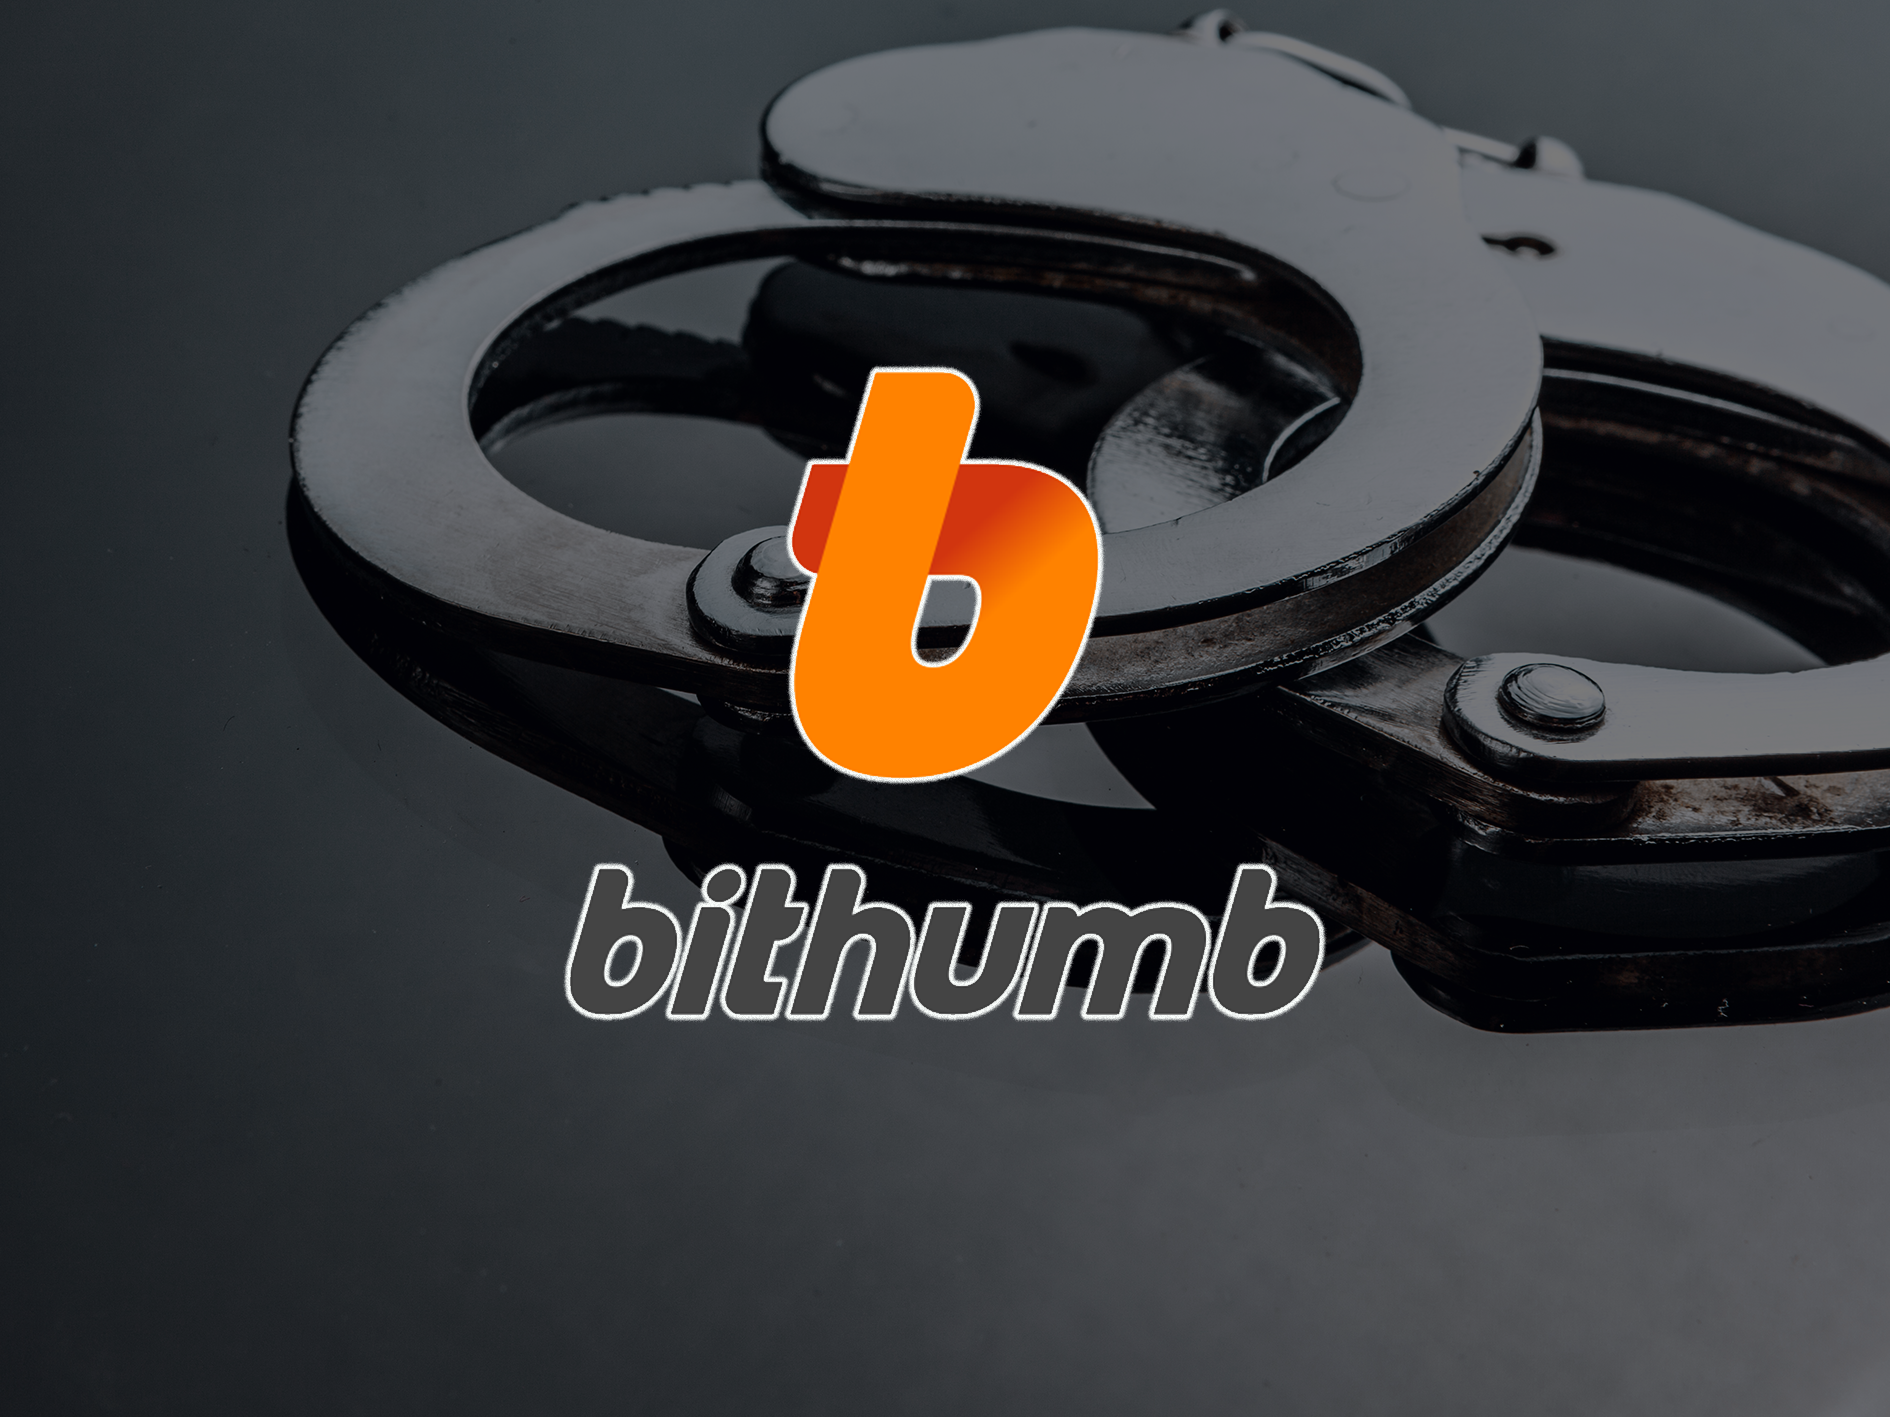 Південна Корея заарештувала керівника криптовалютної біржі Bithumb за звинуваченням у розтраті